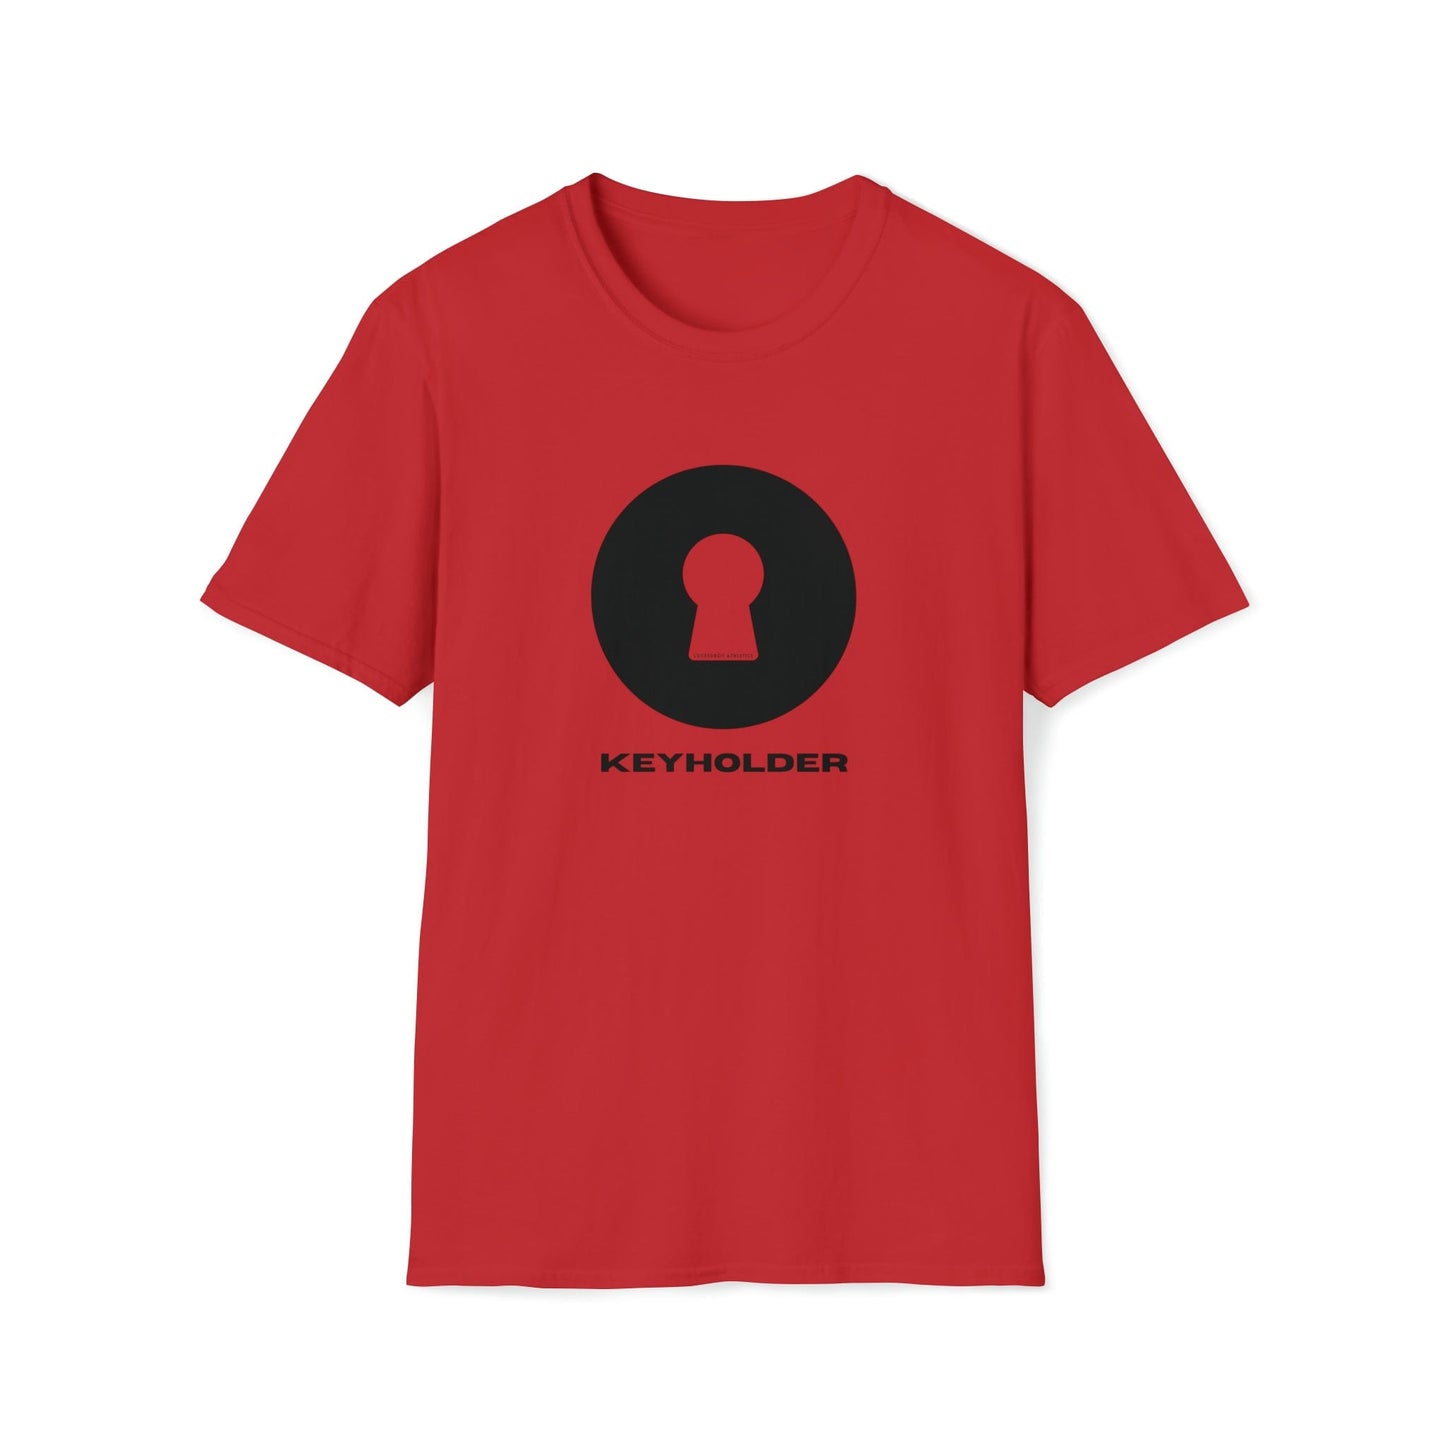 T-Shirt Red / S KeyHolder Lock - Chastity Shirts by LockedBoy Athletics LEATHERDADDY BATOR